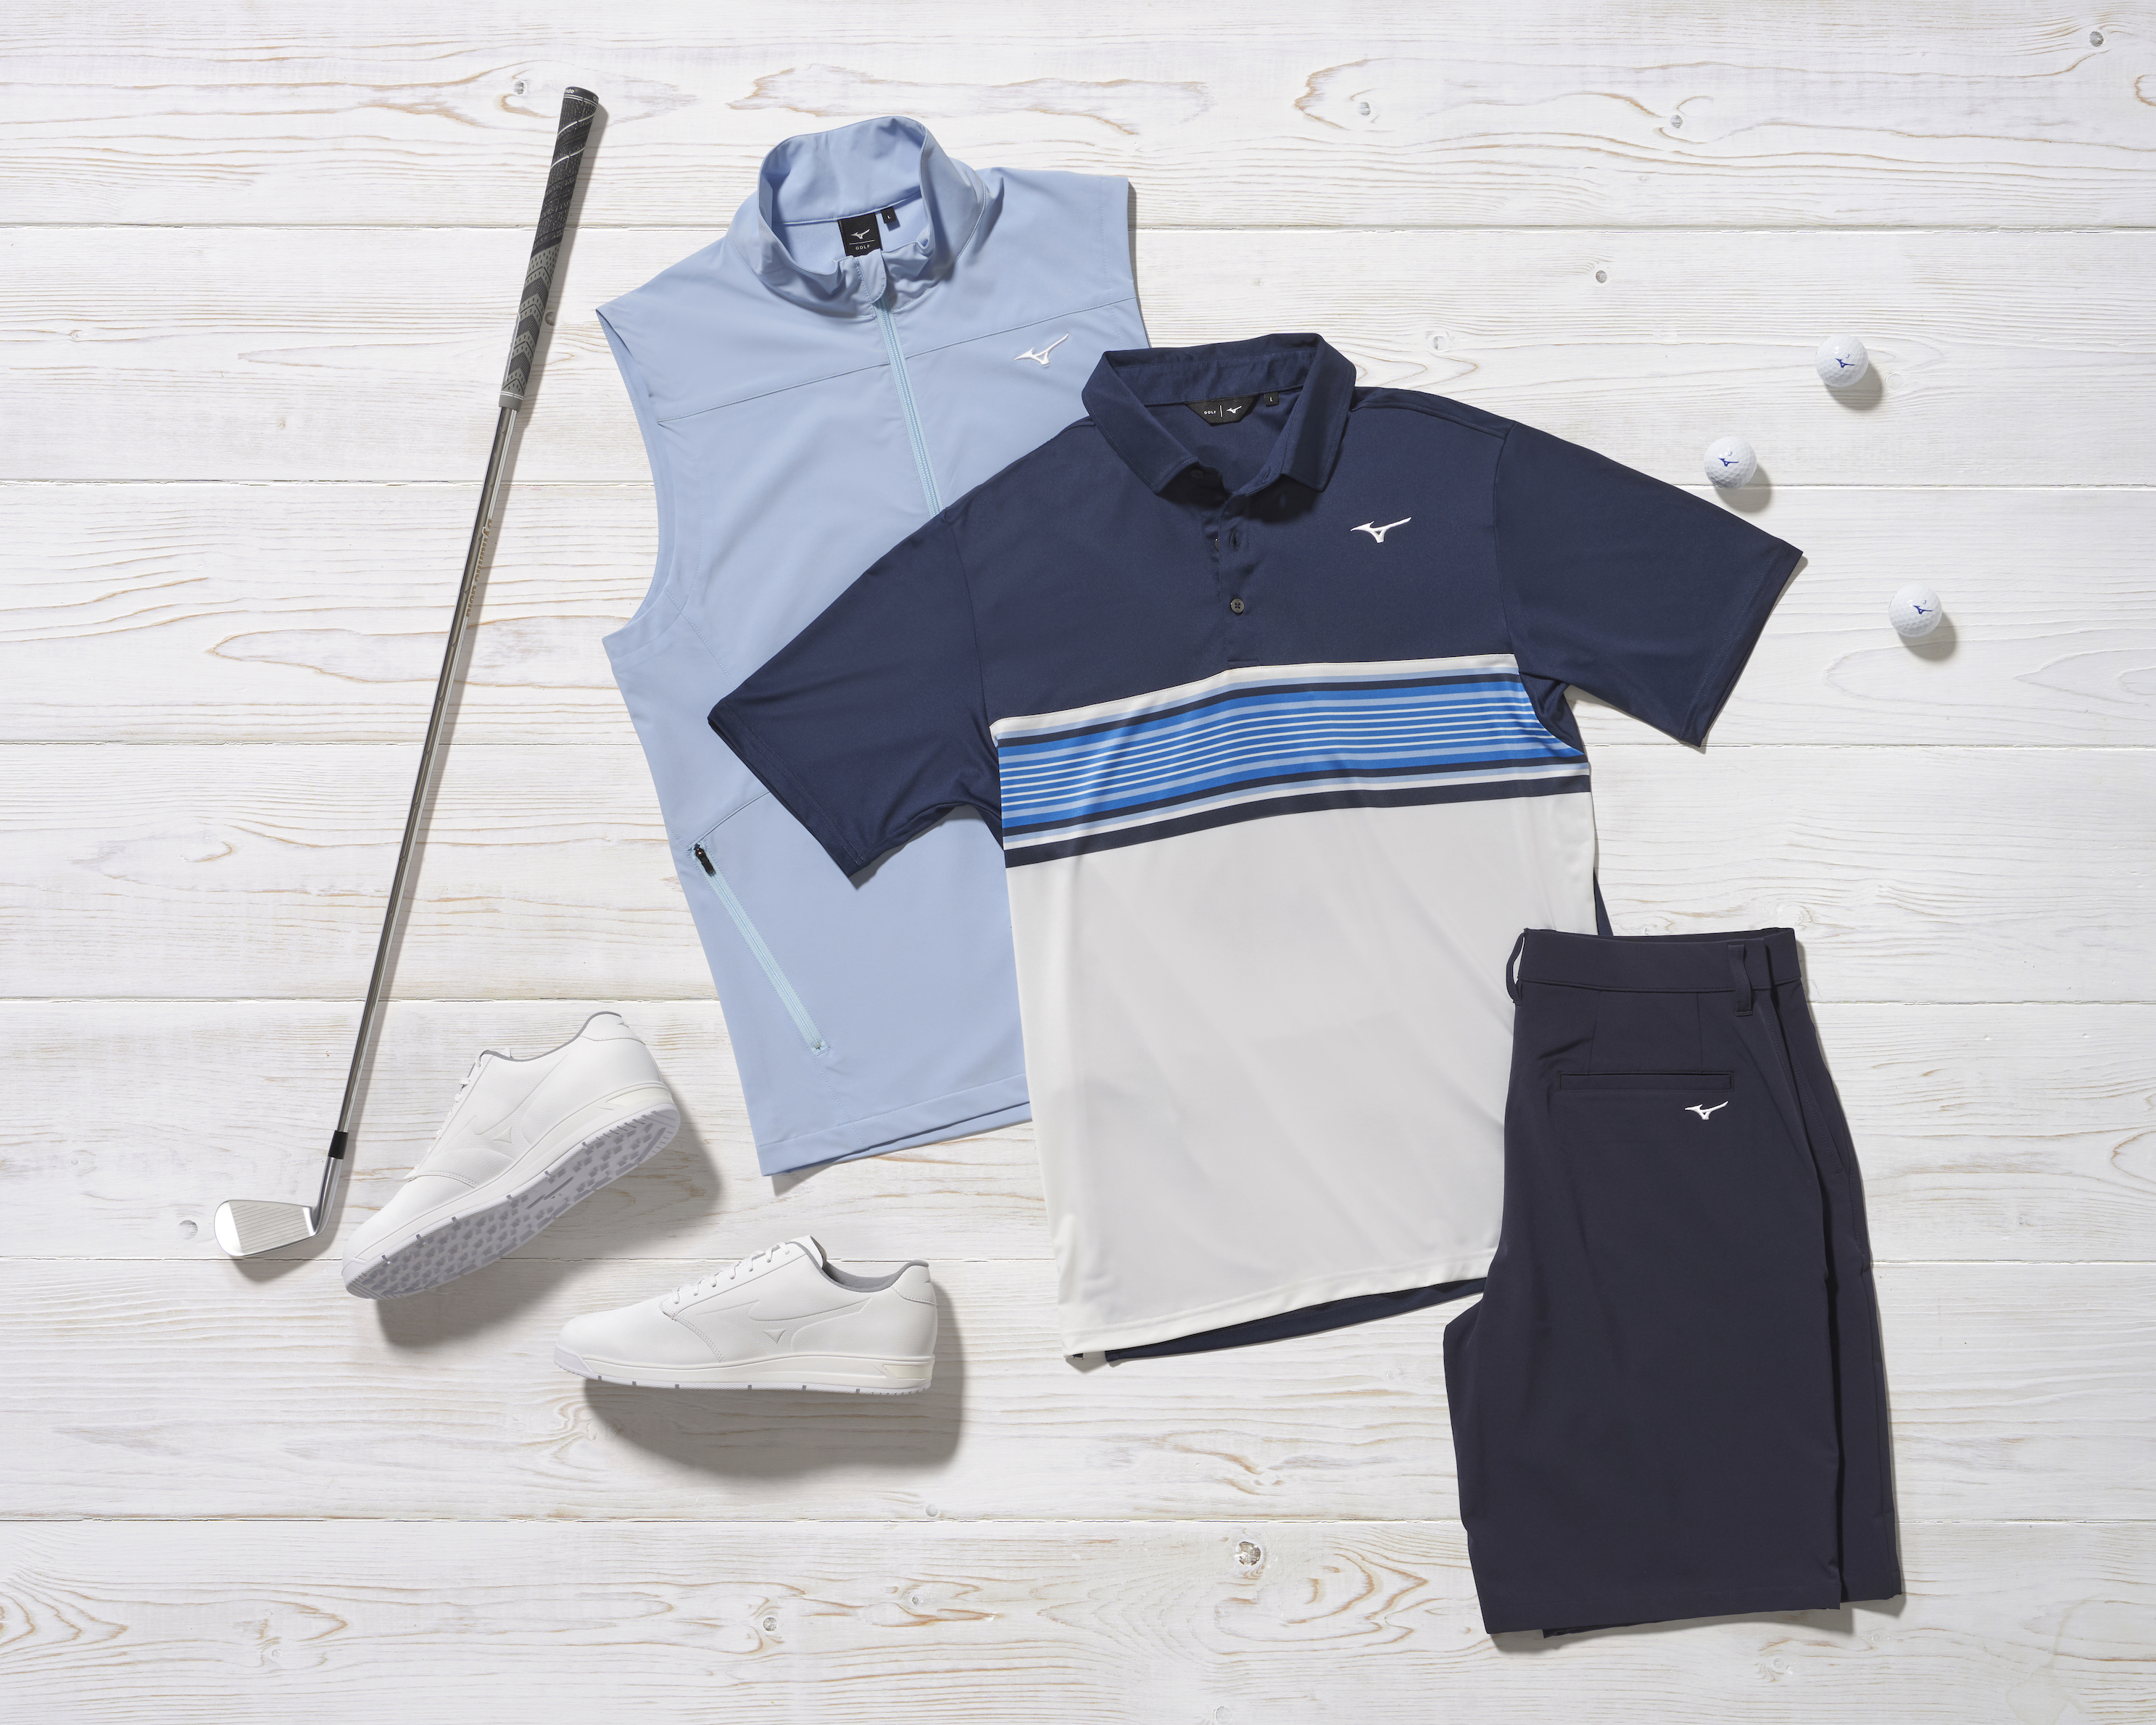 eeuw Doelwit schakelaar Mizuno announces Spring / Summer 2021 golf apparel collection | GolfMagic